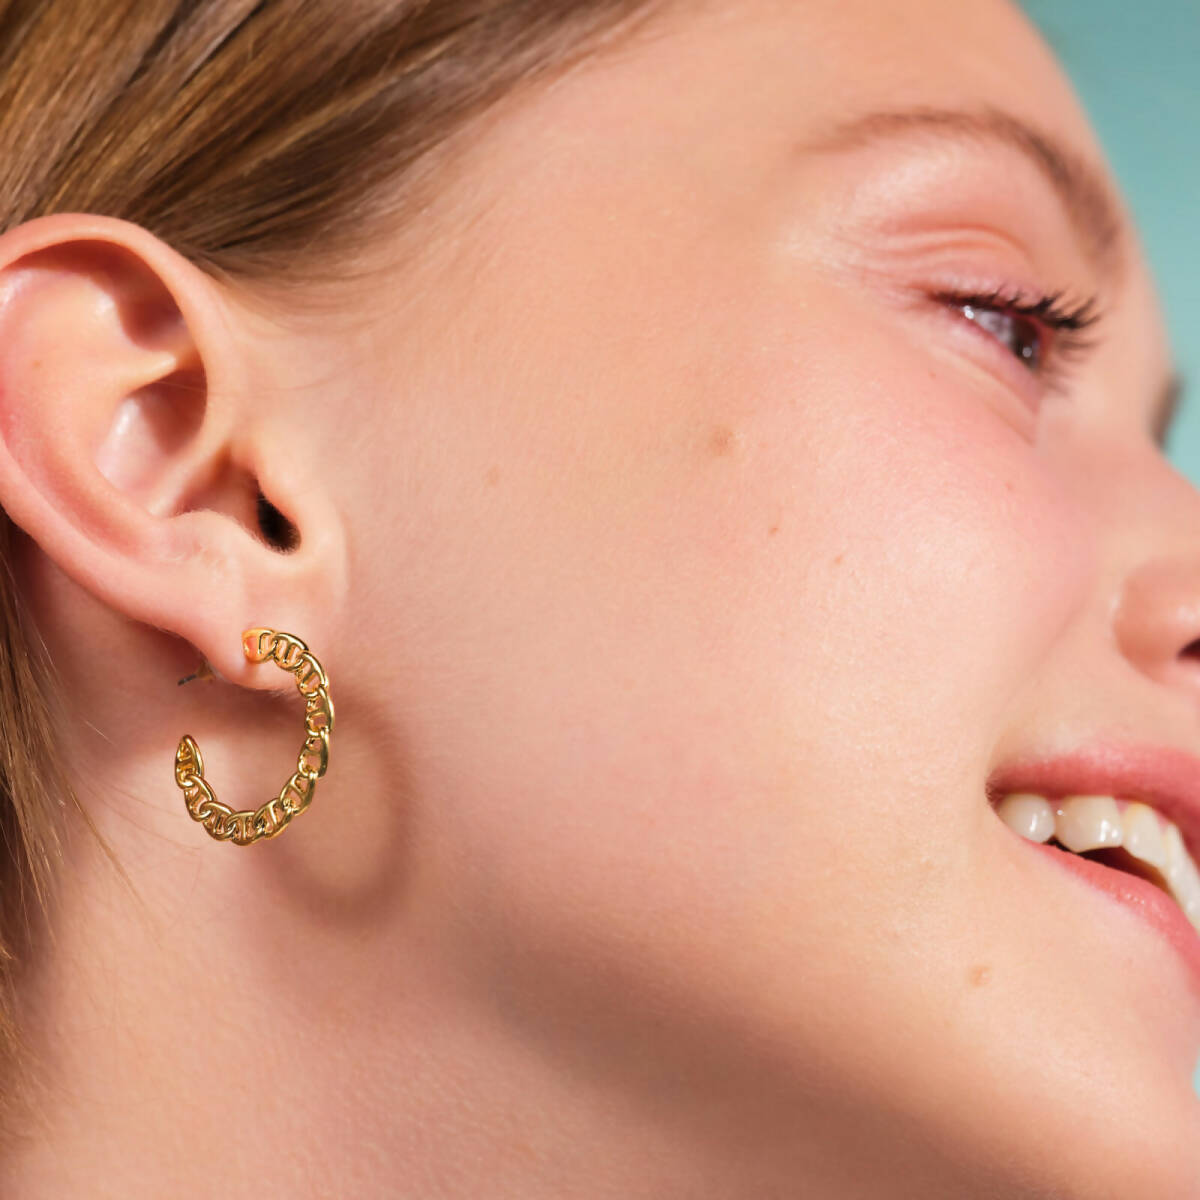 9mm Hoop Earrings with Post – Hoops By Hand